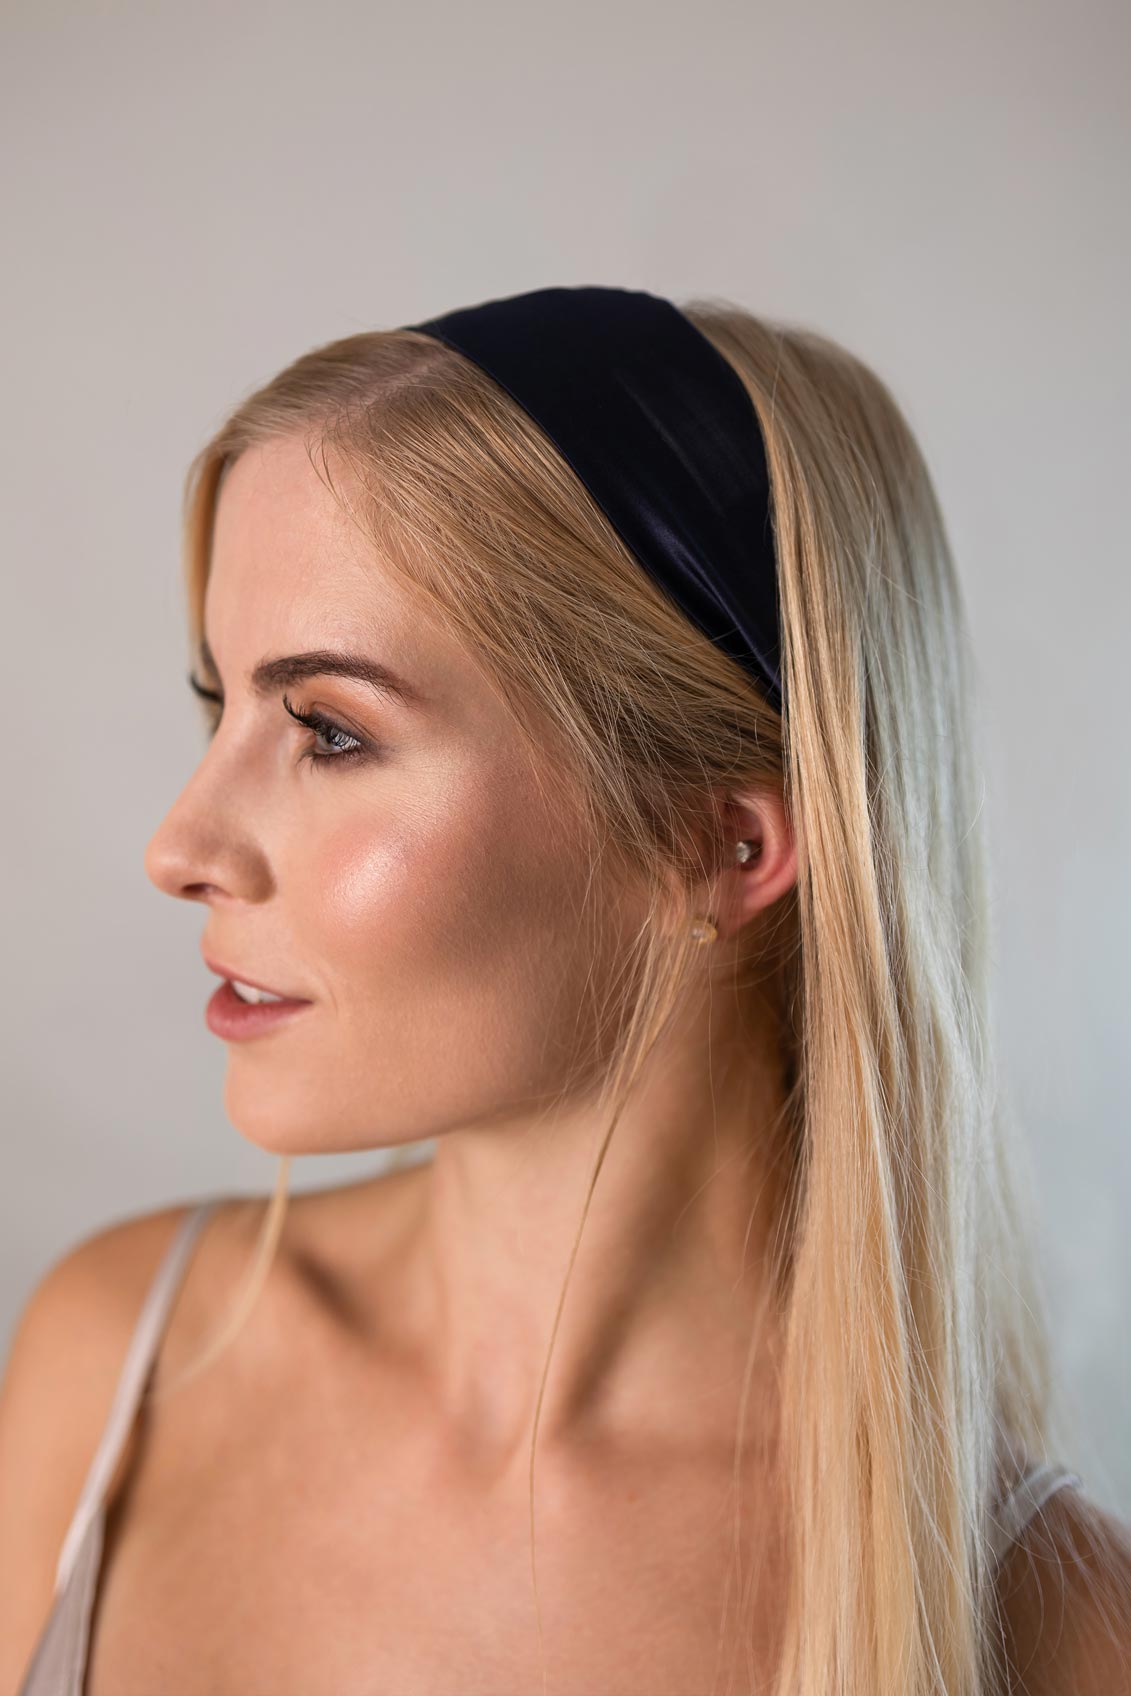 Smooth Headband (Silk) – Glattes Stirnband 100% Seide 22 Momme Grad 6A - 100% Maulbeerseide Marineblau / glatt